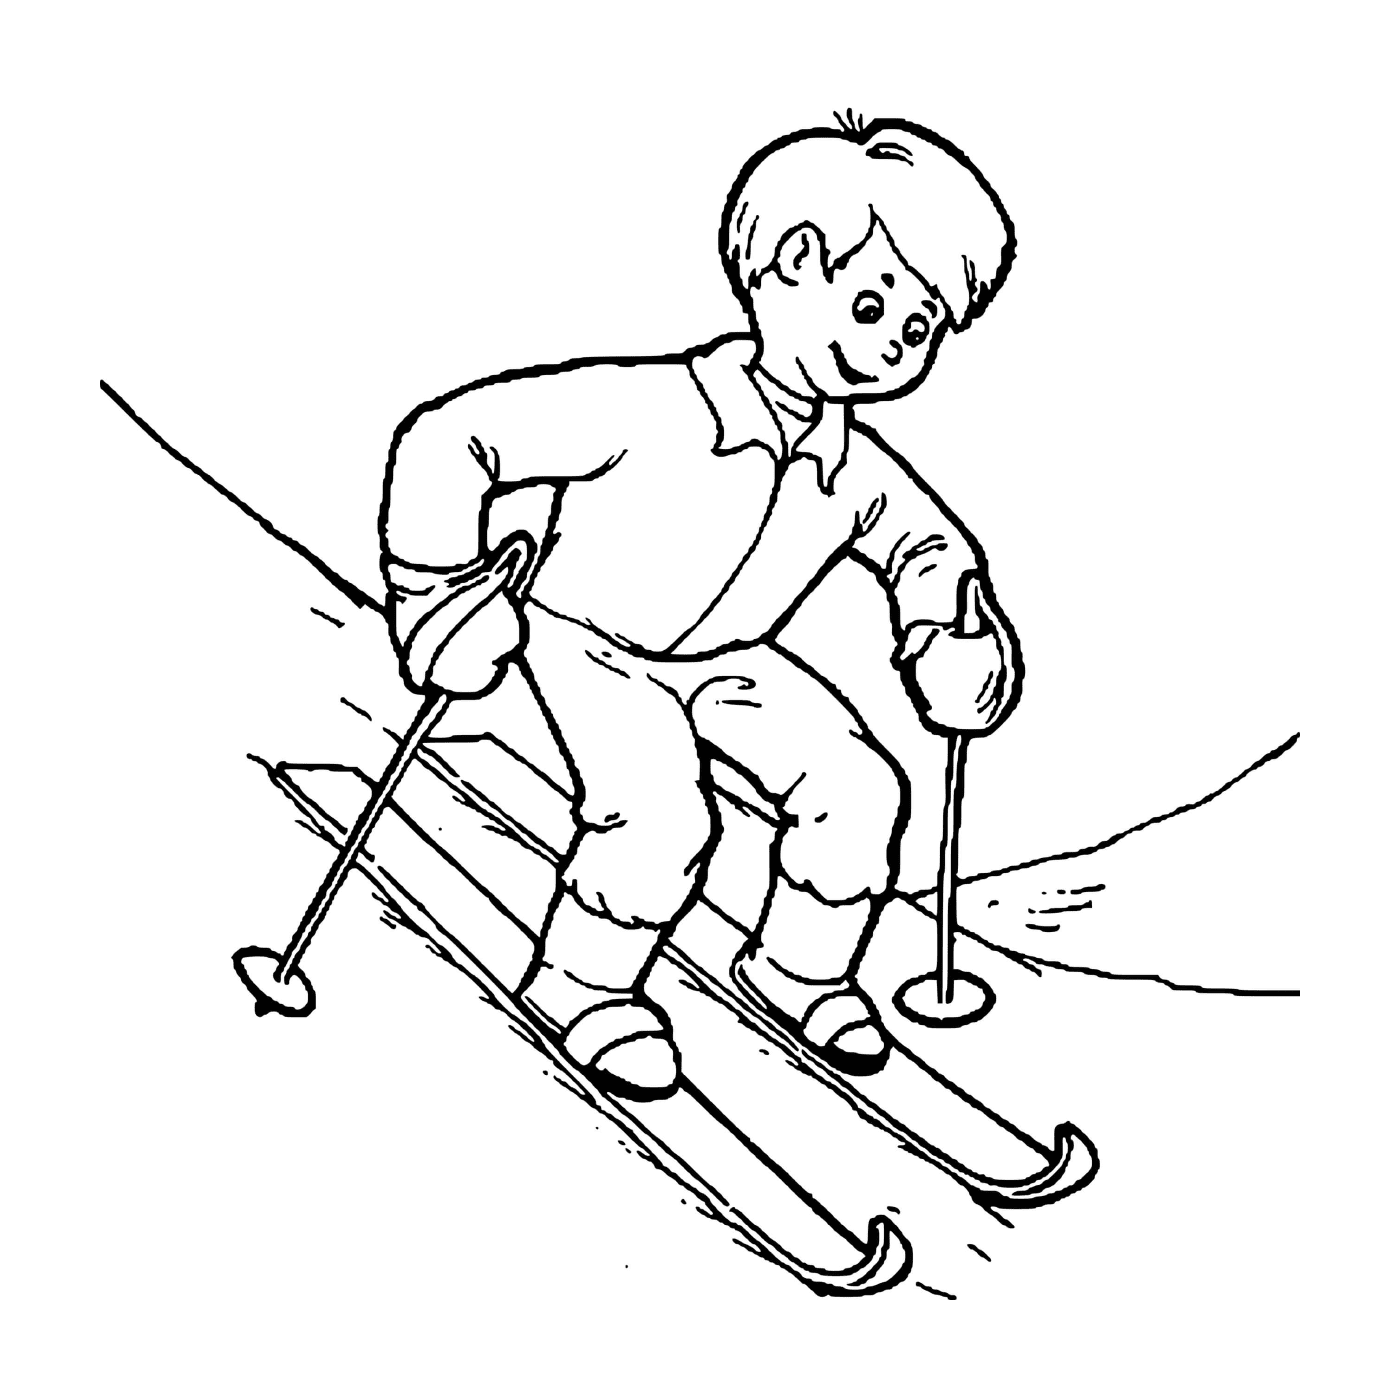  Ребёнок с энтузиазмом учится кататься на лыжах 